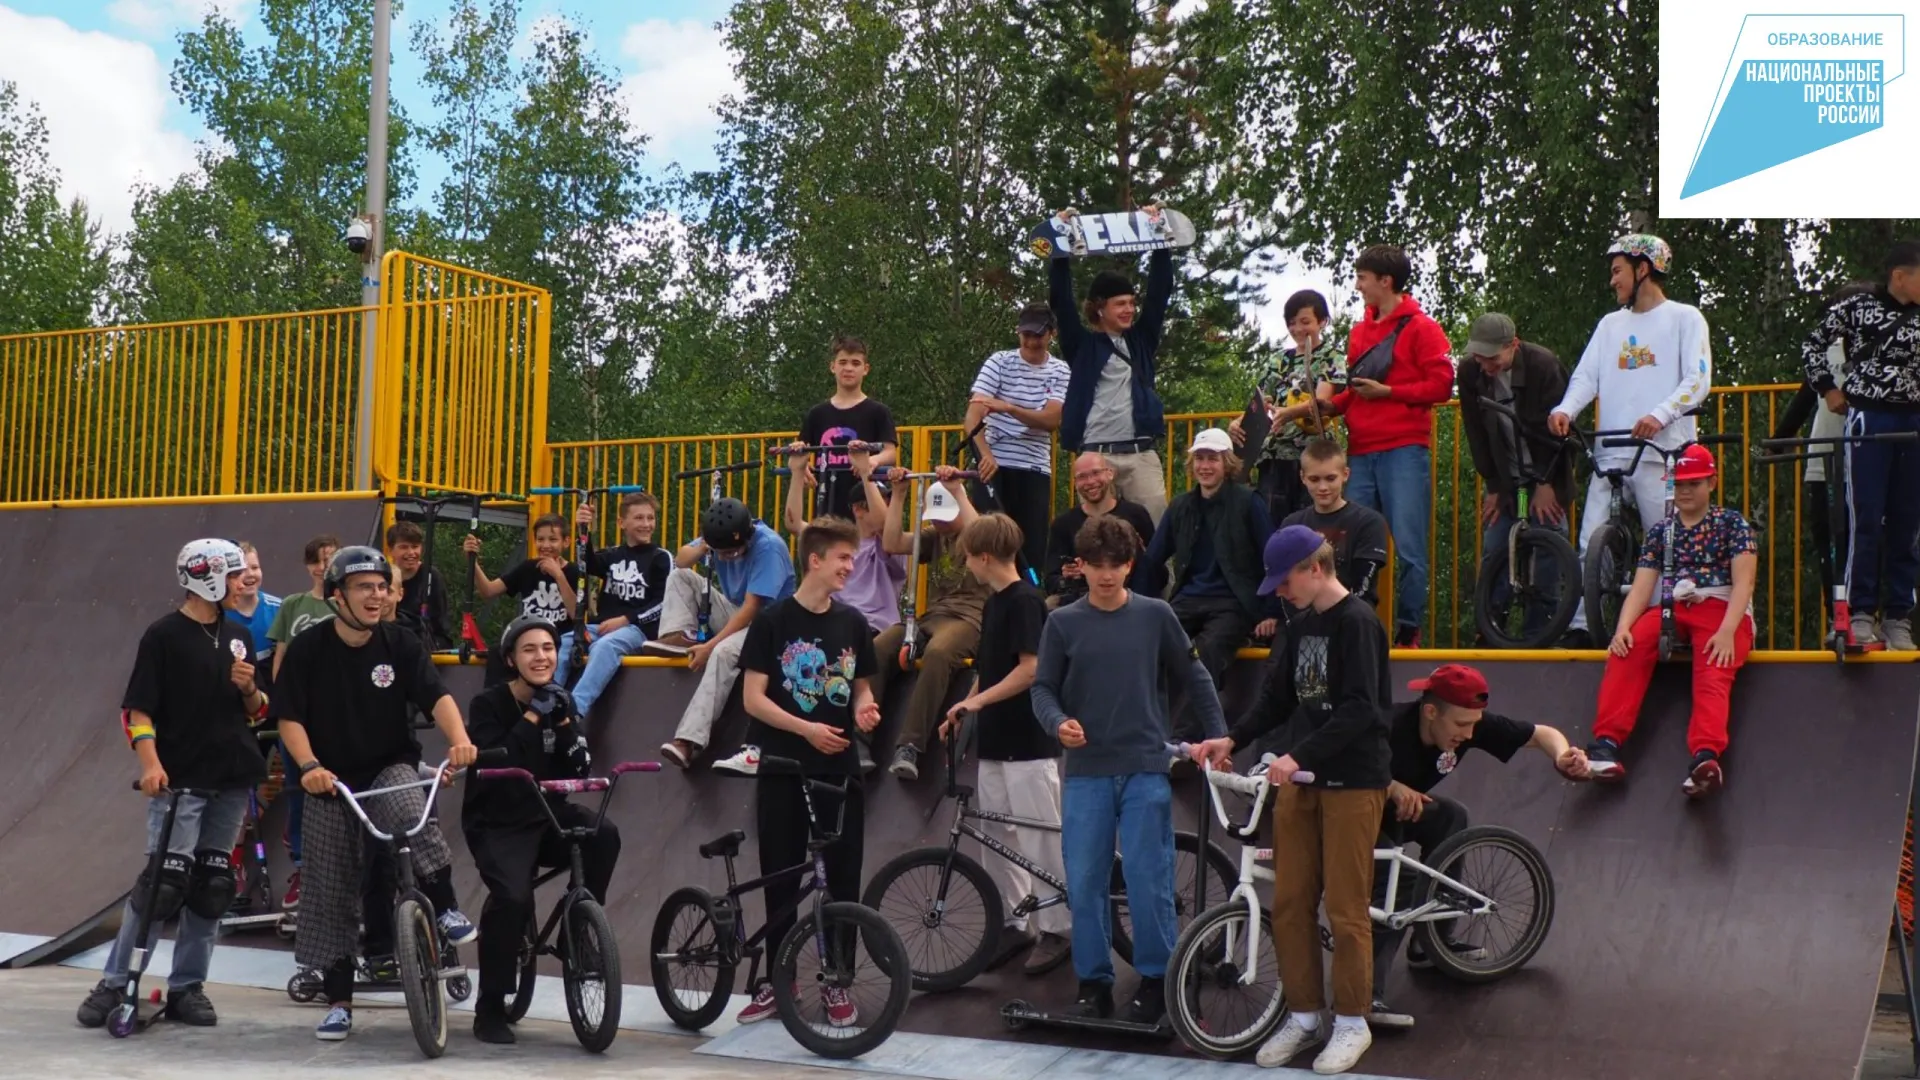 Ямальский фестиваль соберет молодых неформалов. Фото: предоставлено Федеральным агентством по делам молодёжи (Росмолодёжь)